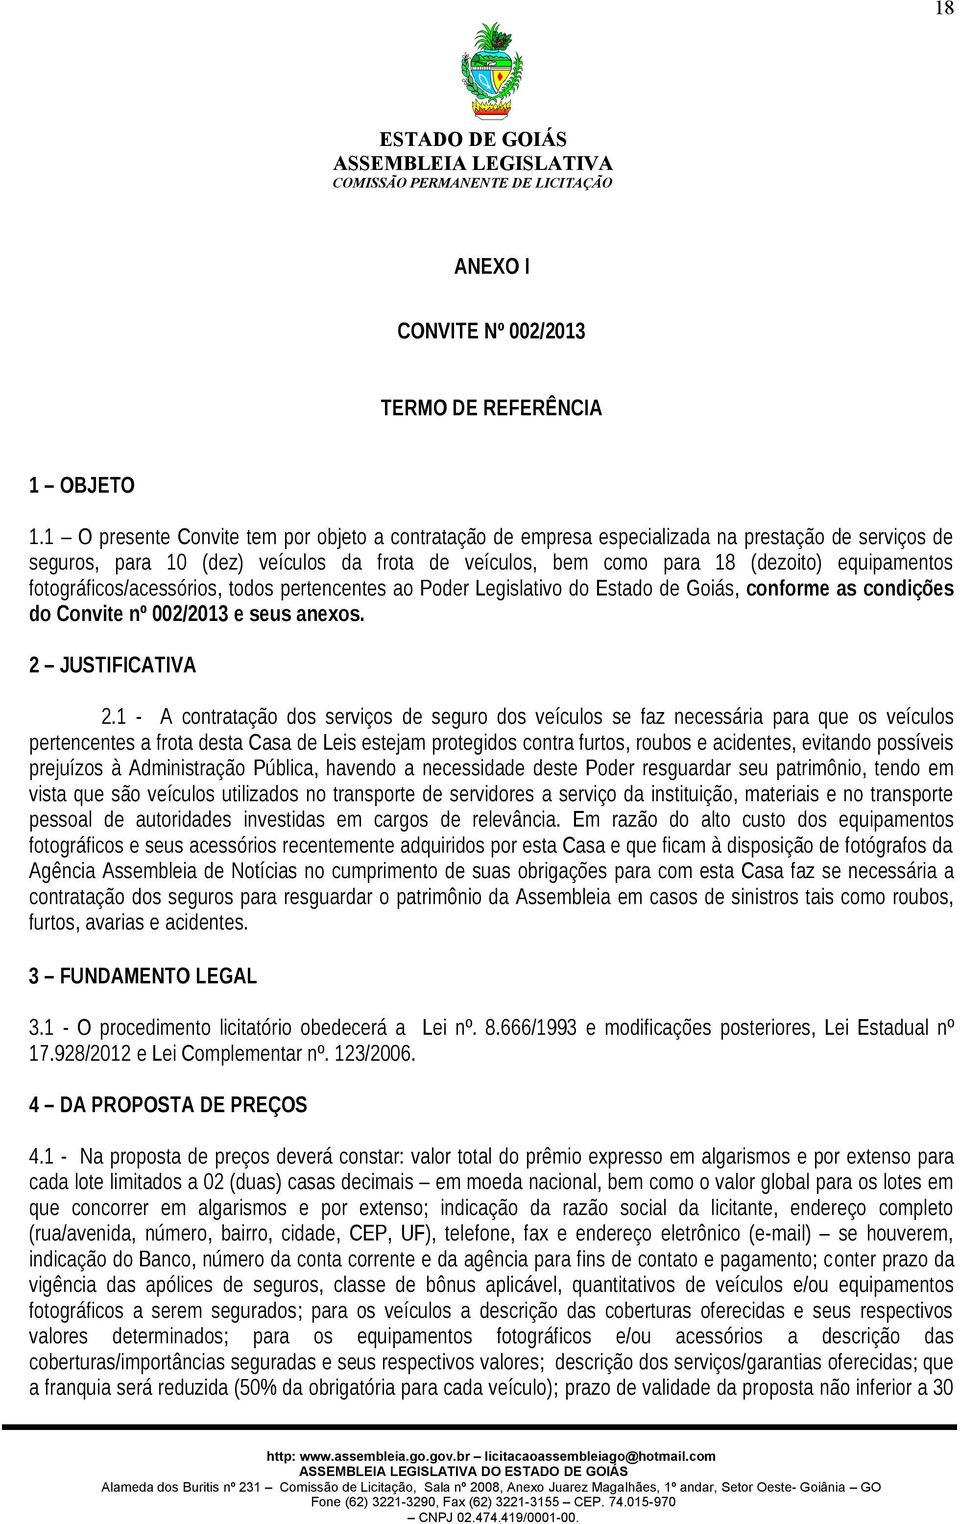 fotográficos/acessórios, todos pertencentes ao Poder Legislativo do Estado de Goiás, conforme as condições do Convite nº 002/2013 e seus anexos. 2 JUSTIFICATIVA 2.